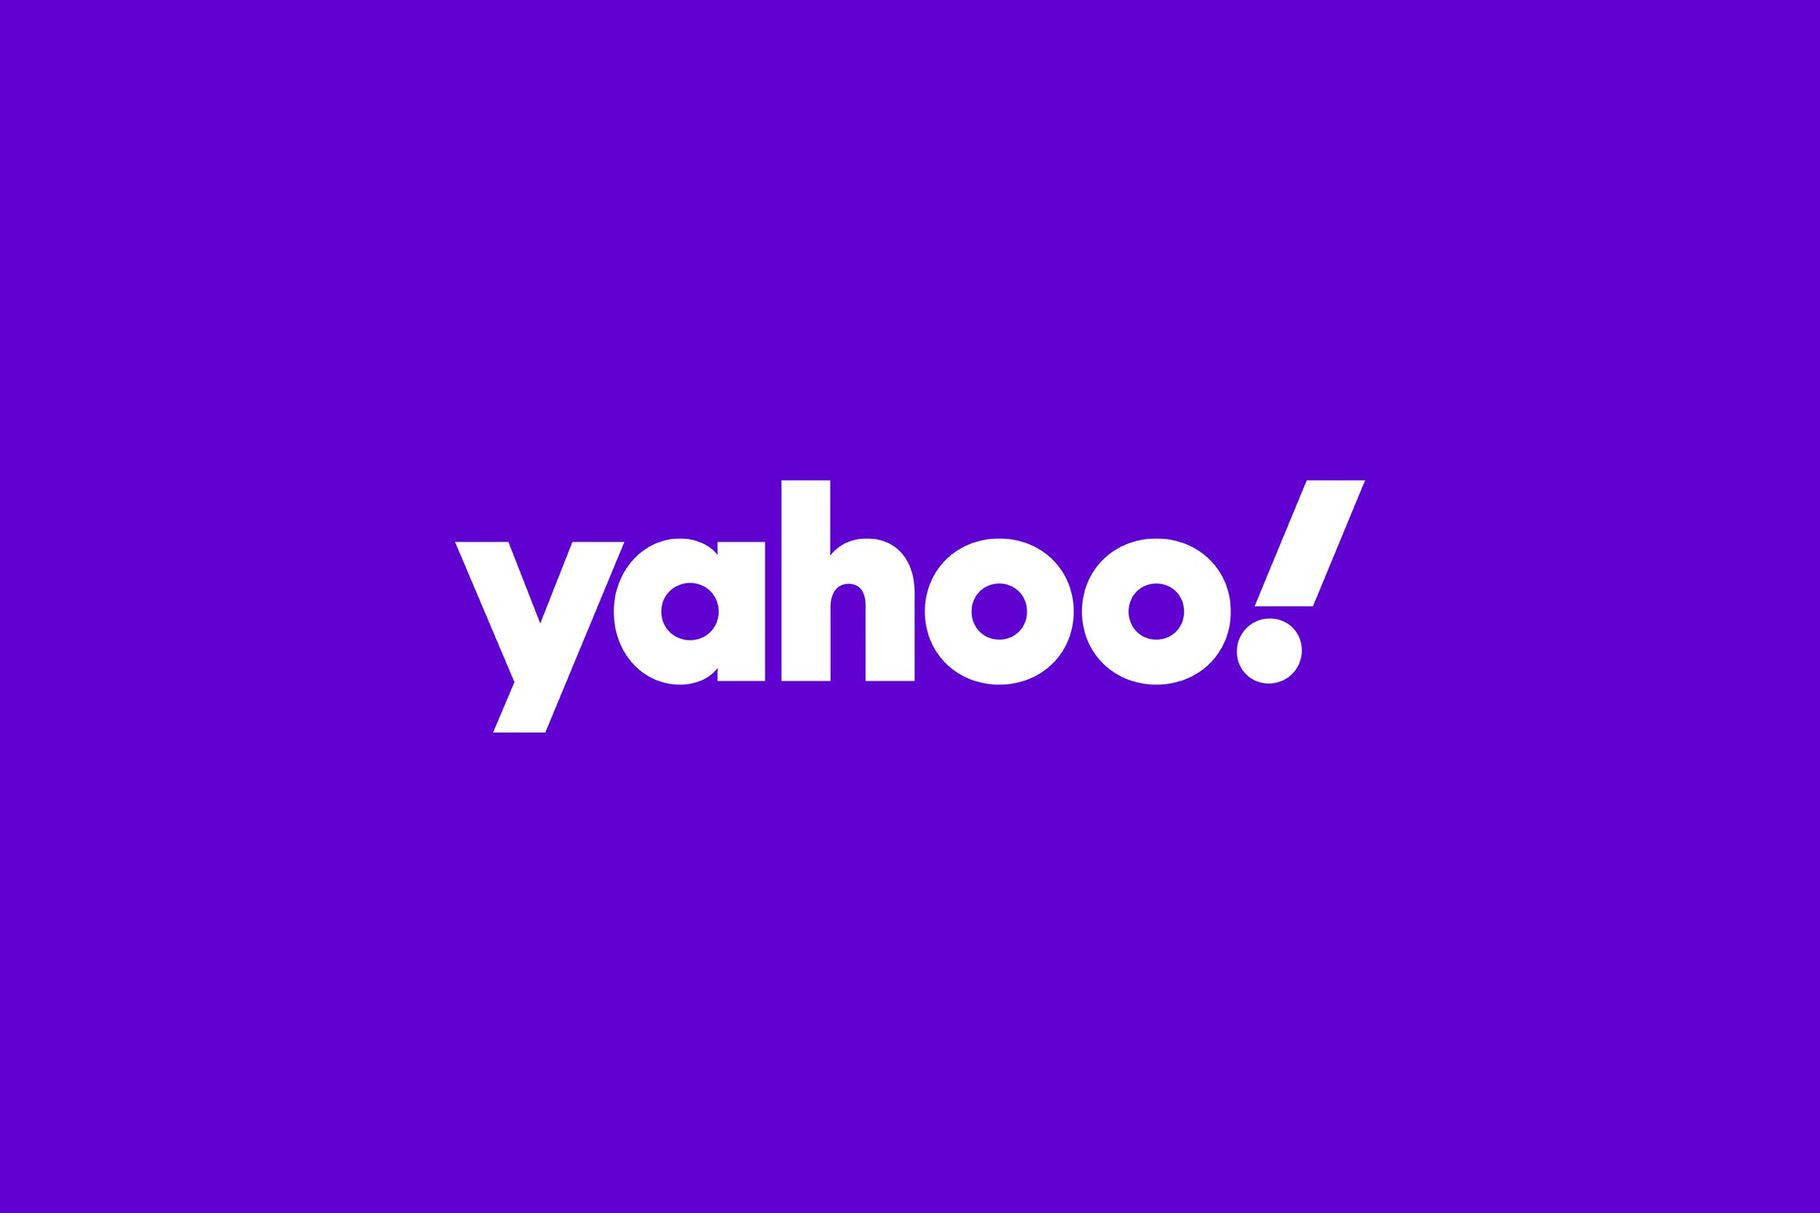 Logo mới của Yahoo mang đến cảm giác tươi mới cho trang web của họ. Nếu bạn là một người yêu thích công nghệ, hãy xem ngay hình ảnh mới về Logo này để cập nhật những cập nhật mới nhất.